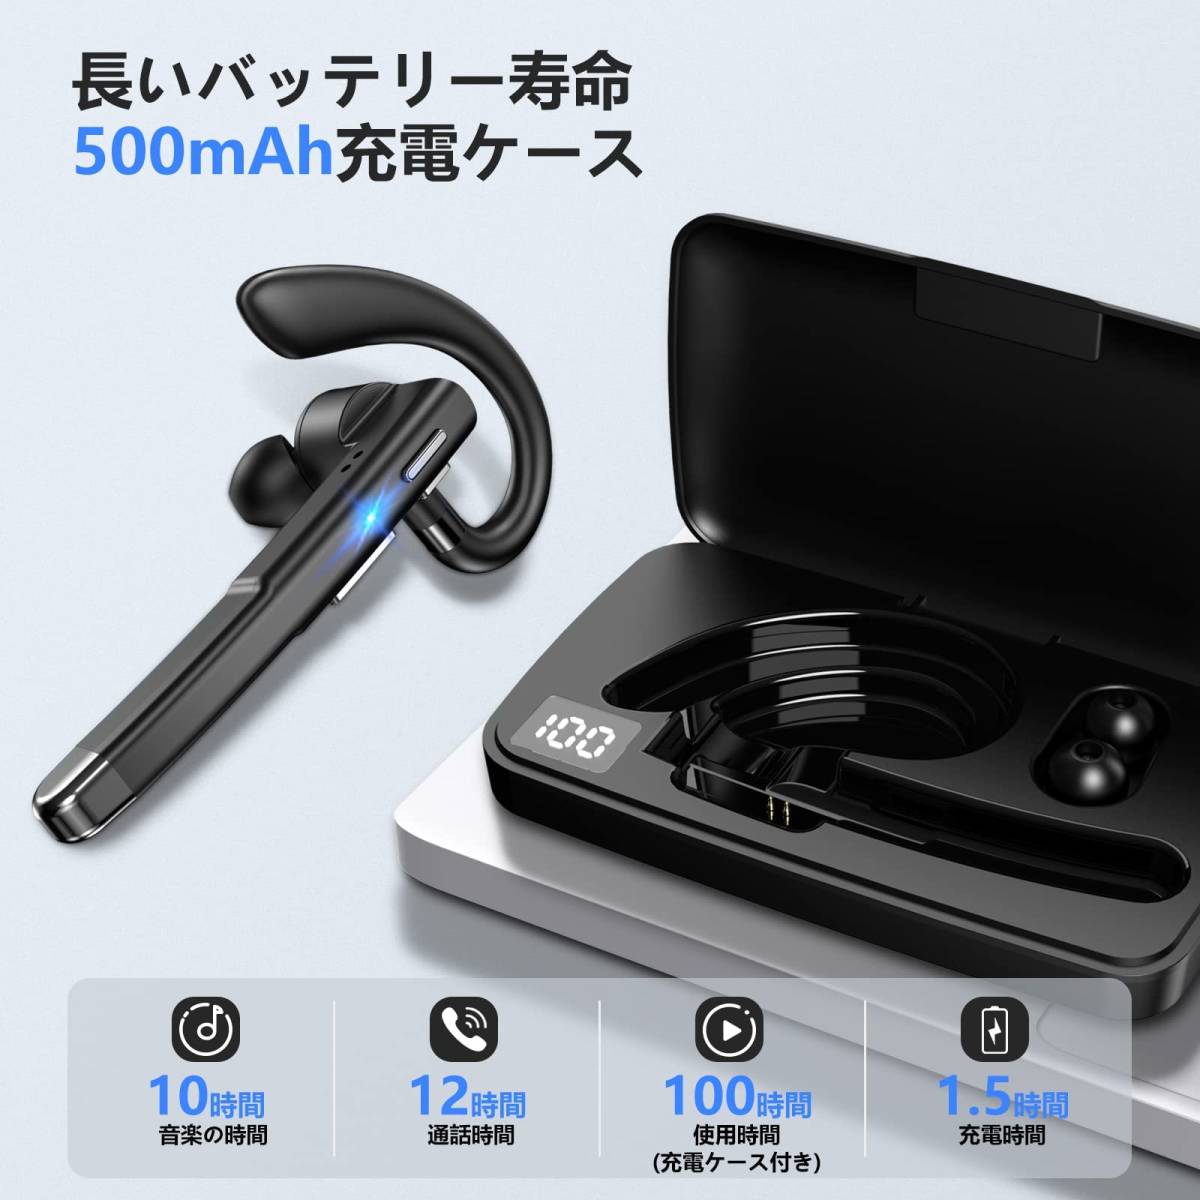 【在庫処分】Bluetooth ヘッドセット 片耳 イヤホン ワイヤレス 耳掛け型 超長時間連続使用 500mAh充電ケース付 L_画像7